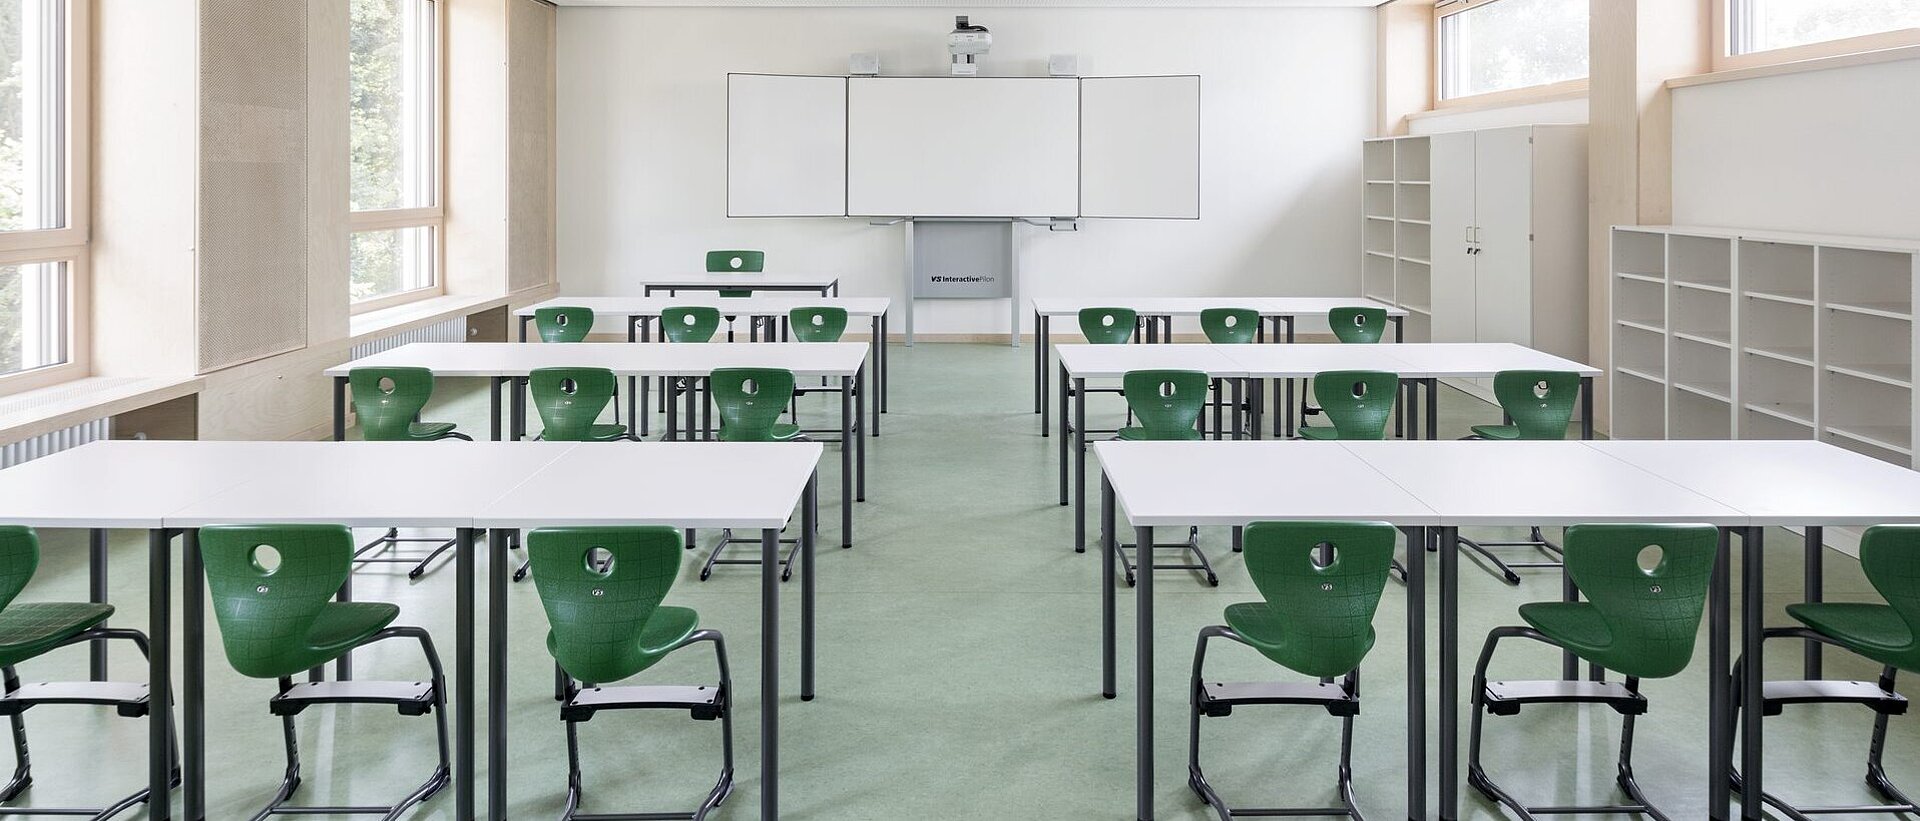 Klassenraum mit Whiteboard und grünen Stühlen